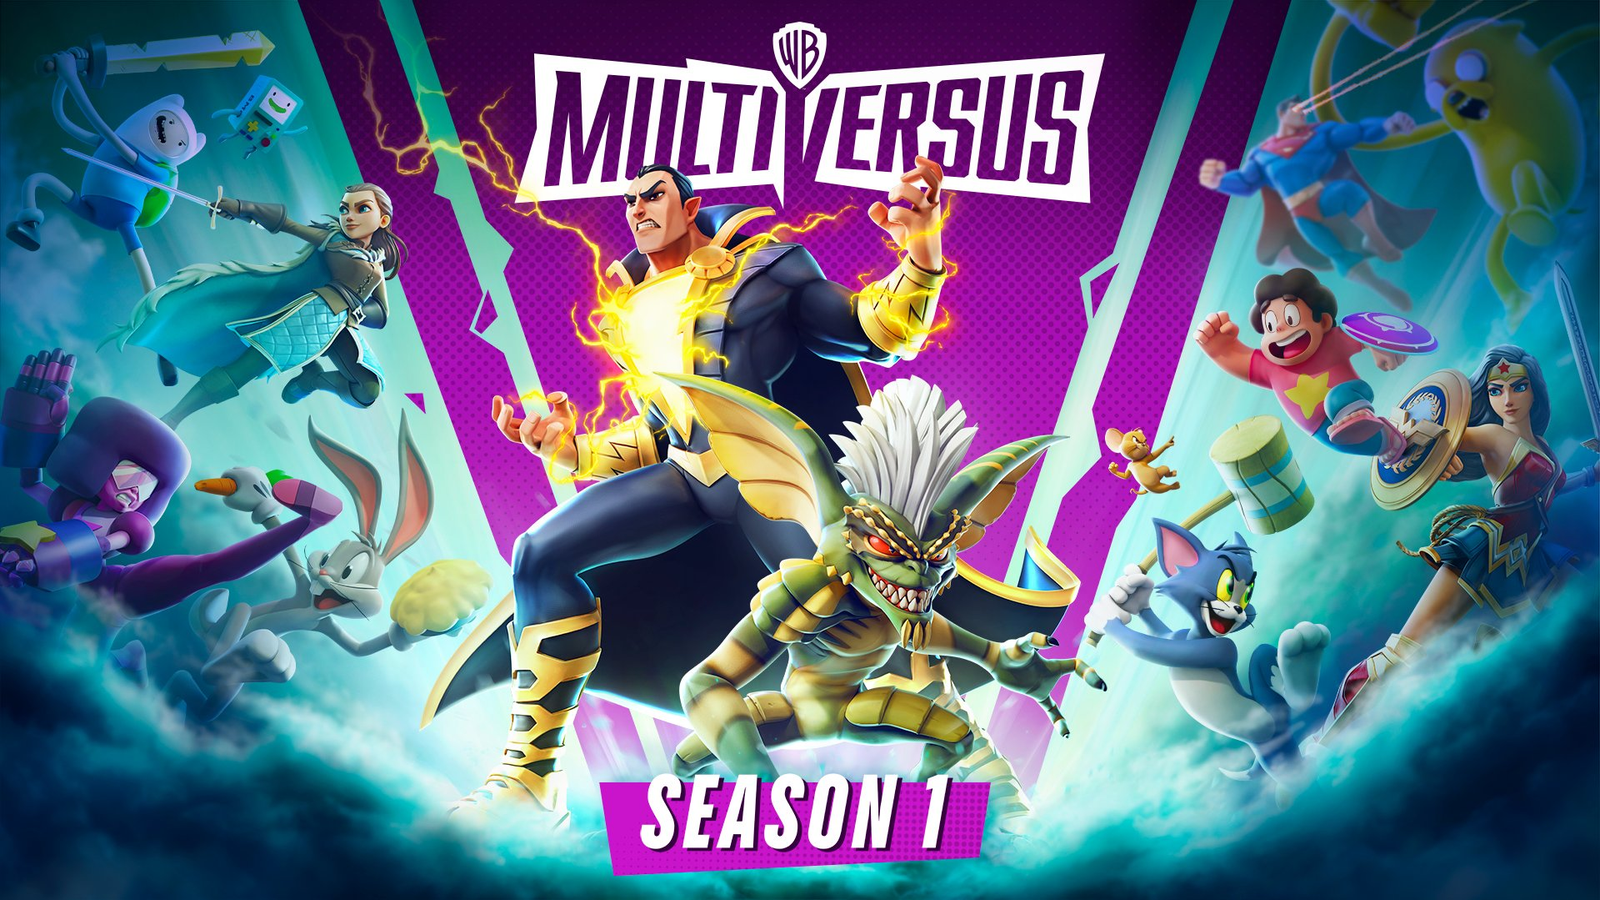 Warner anuncia MultiVersus, game de luta no estilo Smash Bros